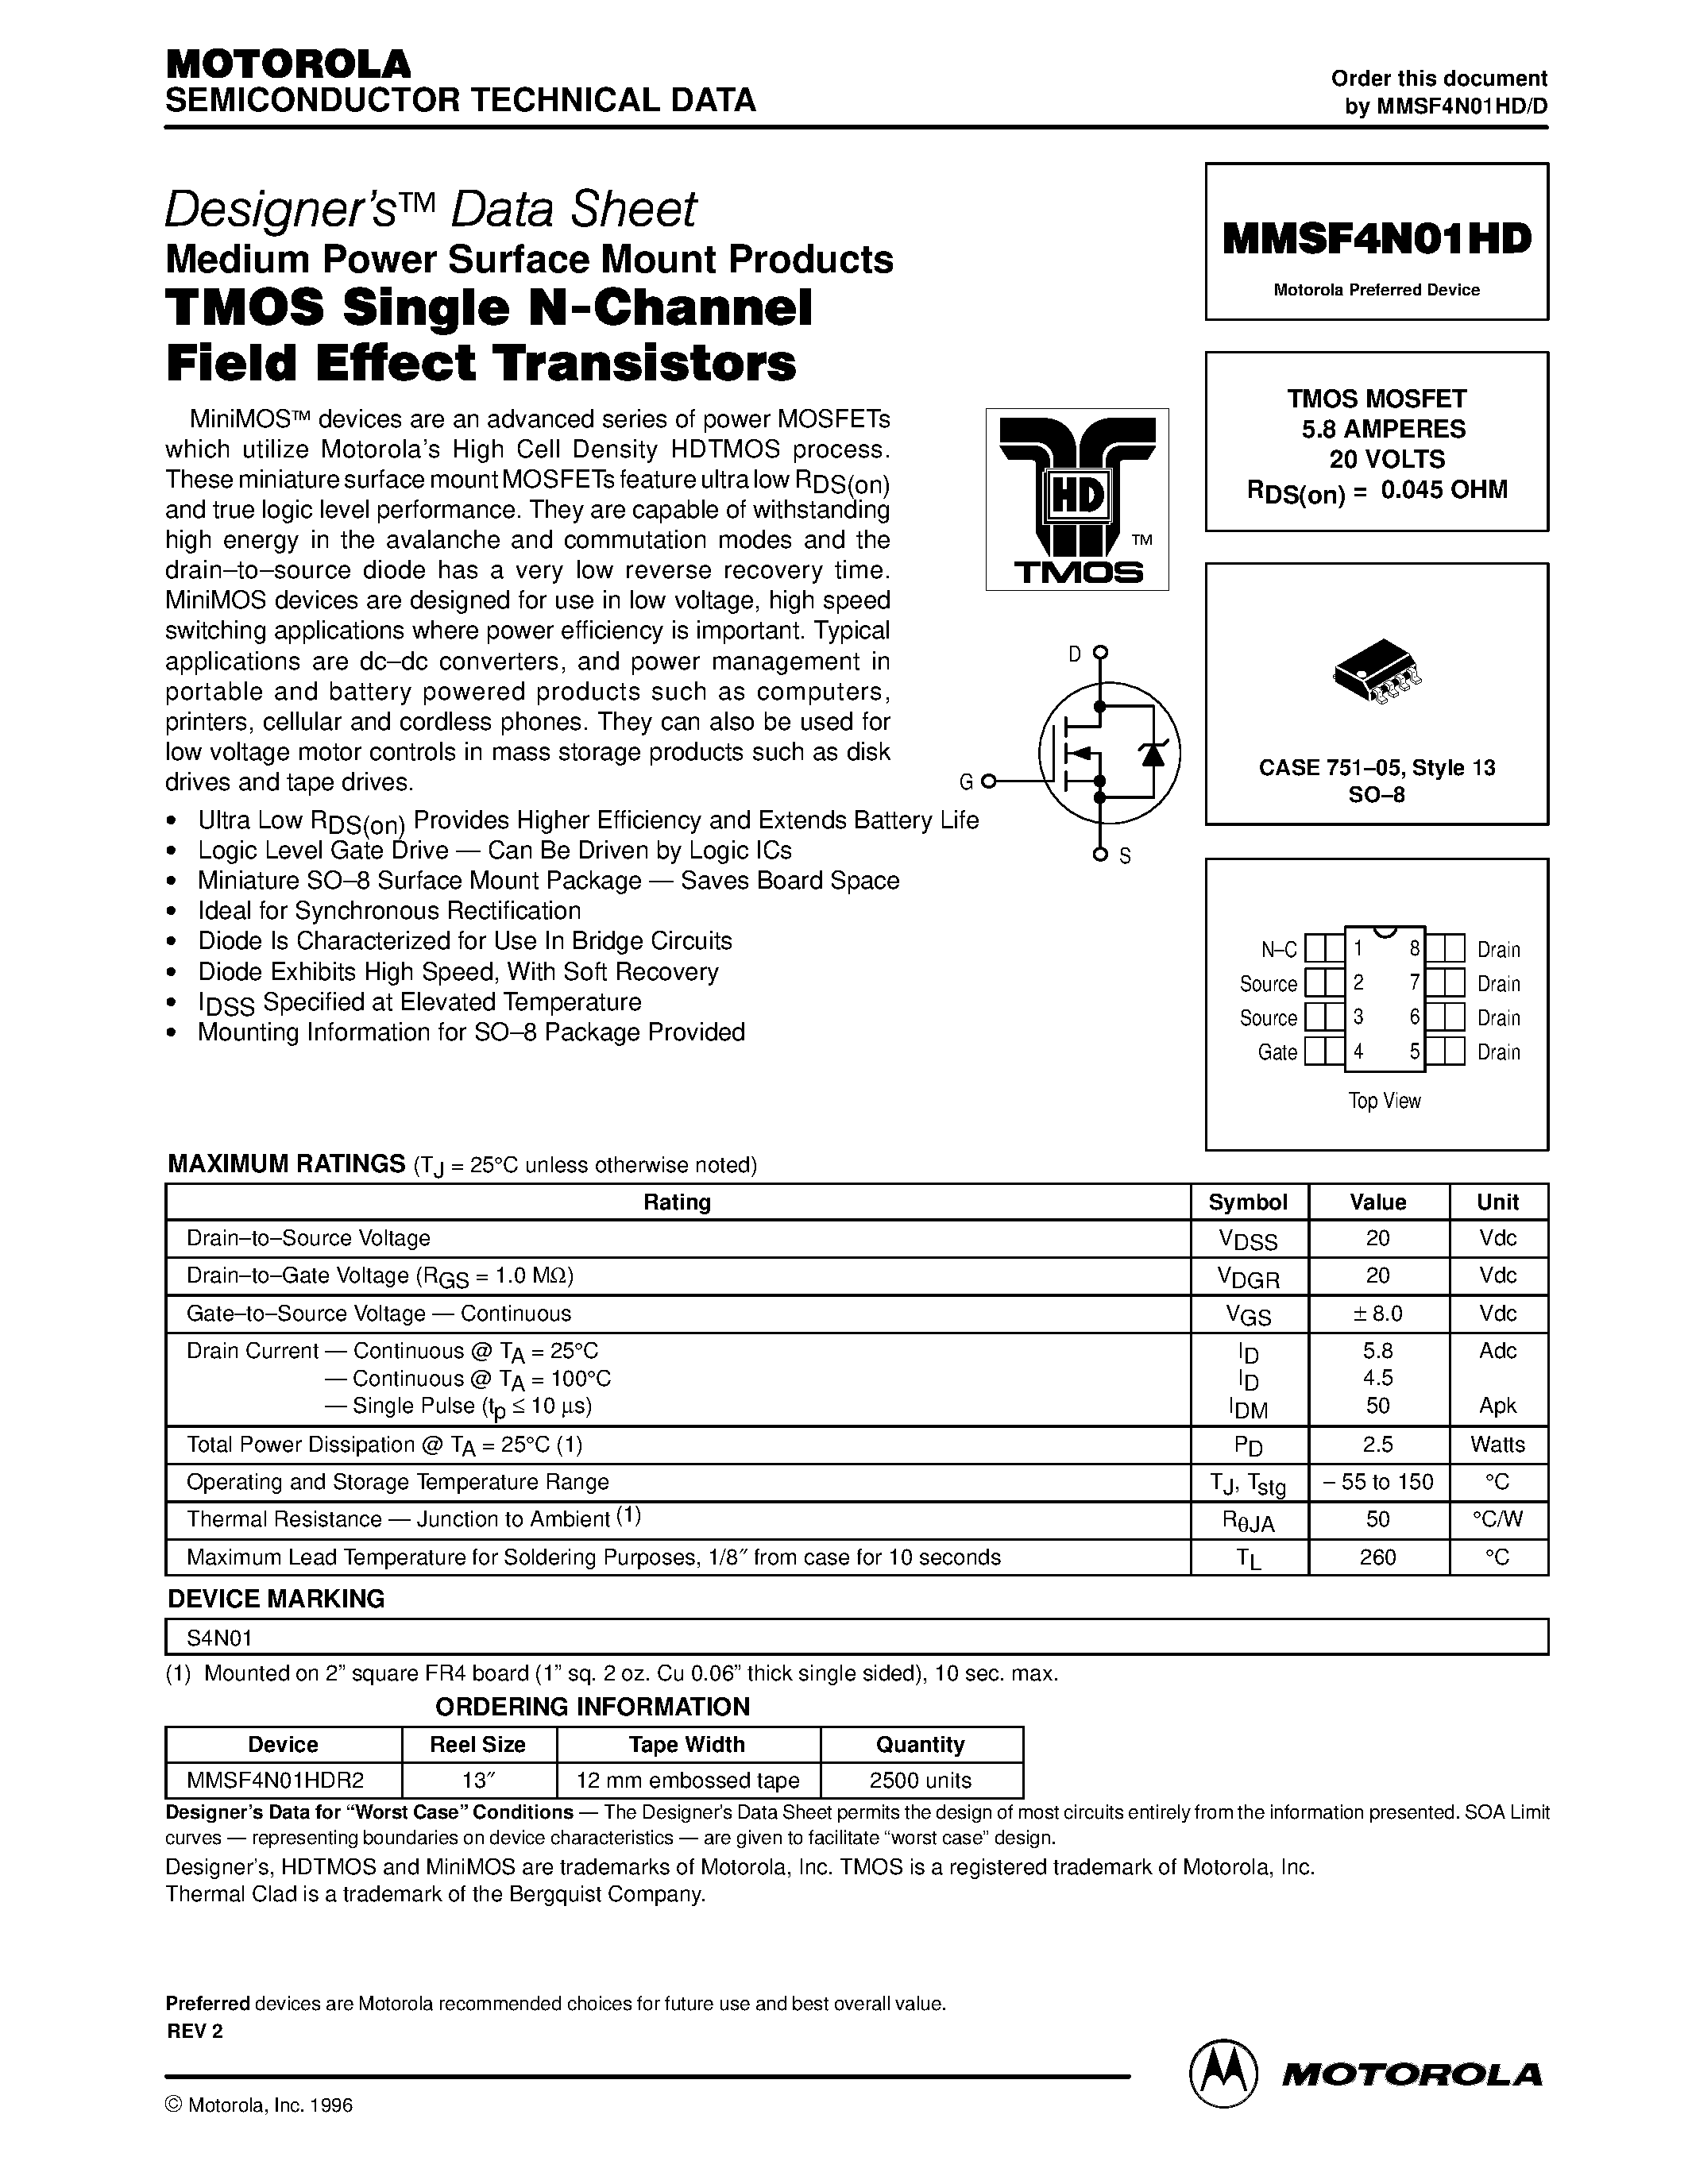 Datasheet MMSF4N01HD - TMOS MOSFET 5.8 AMPERES 20 VOLTS page 1